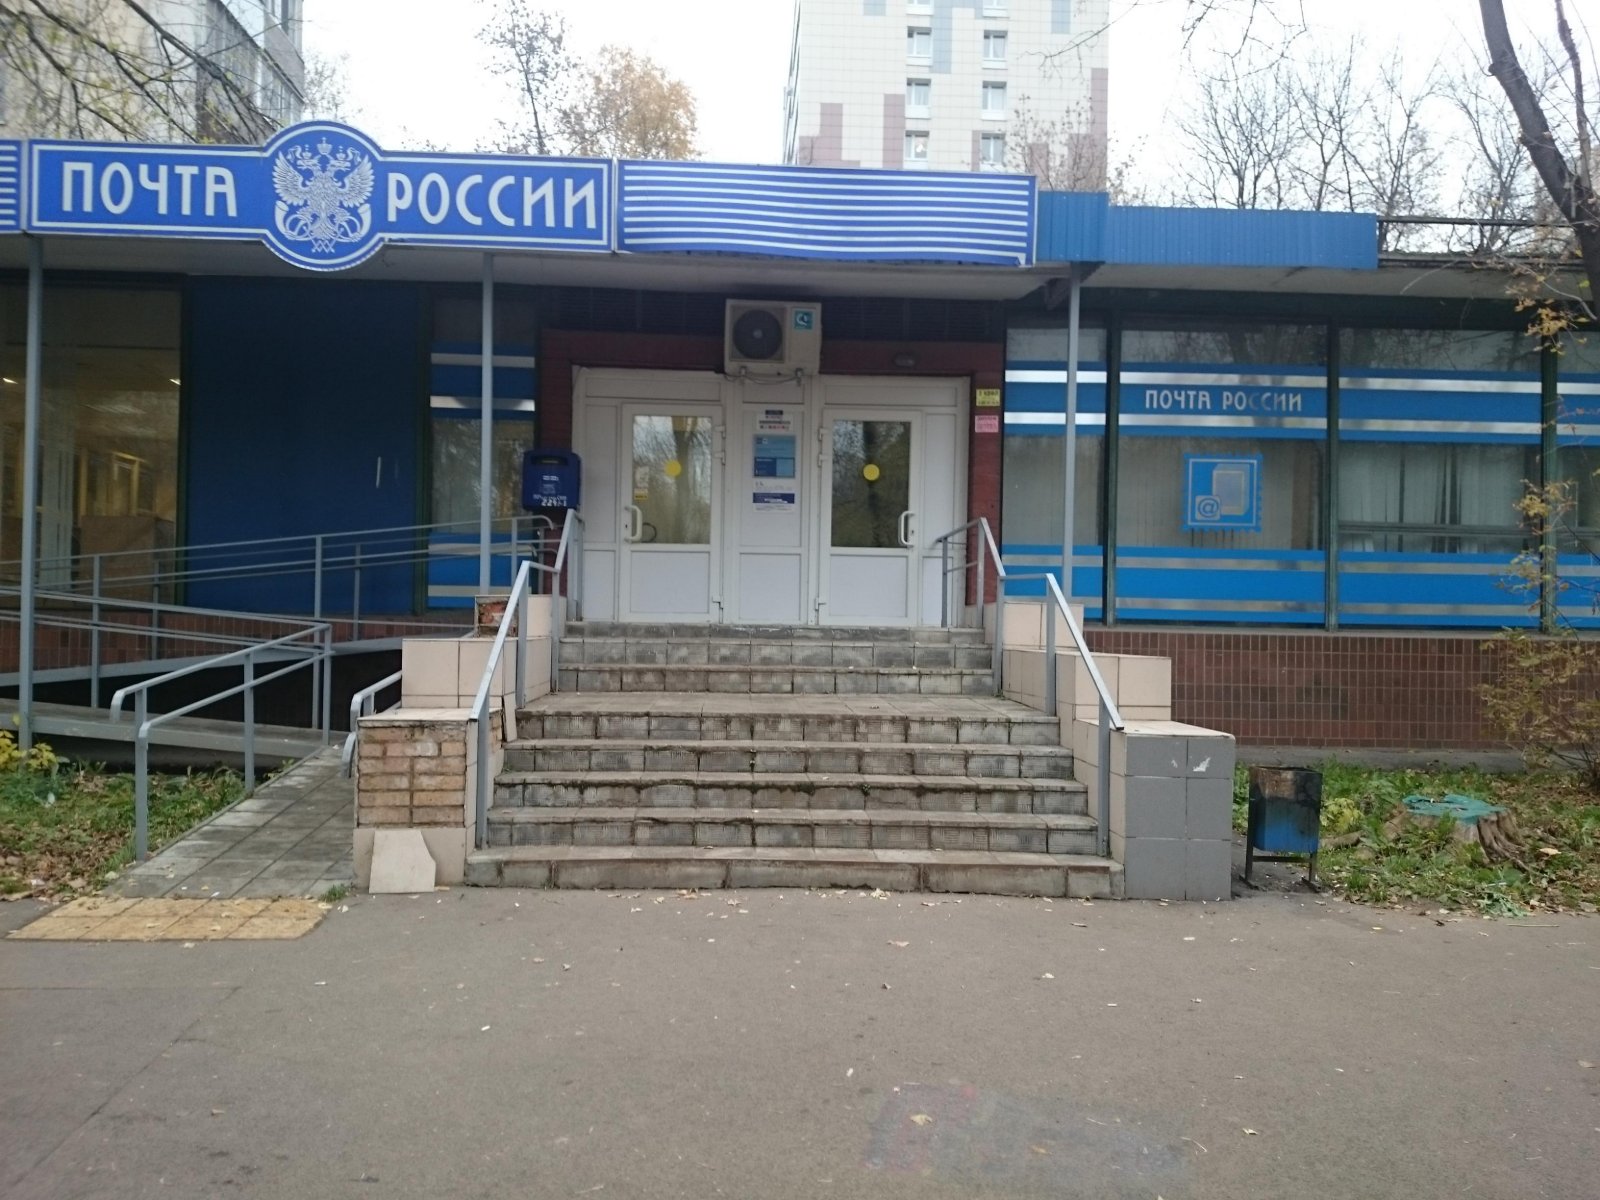 Почтовое отделение города москвы. Почта. Почта здание. Отделение почты. Почта фото.